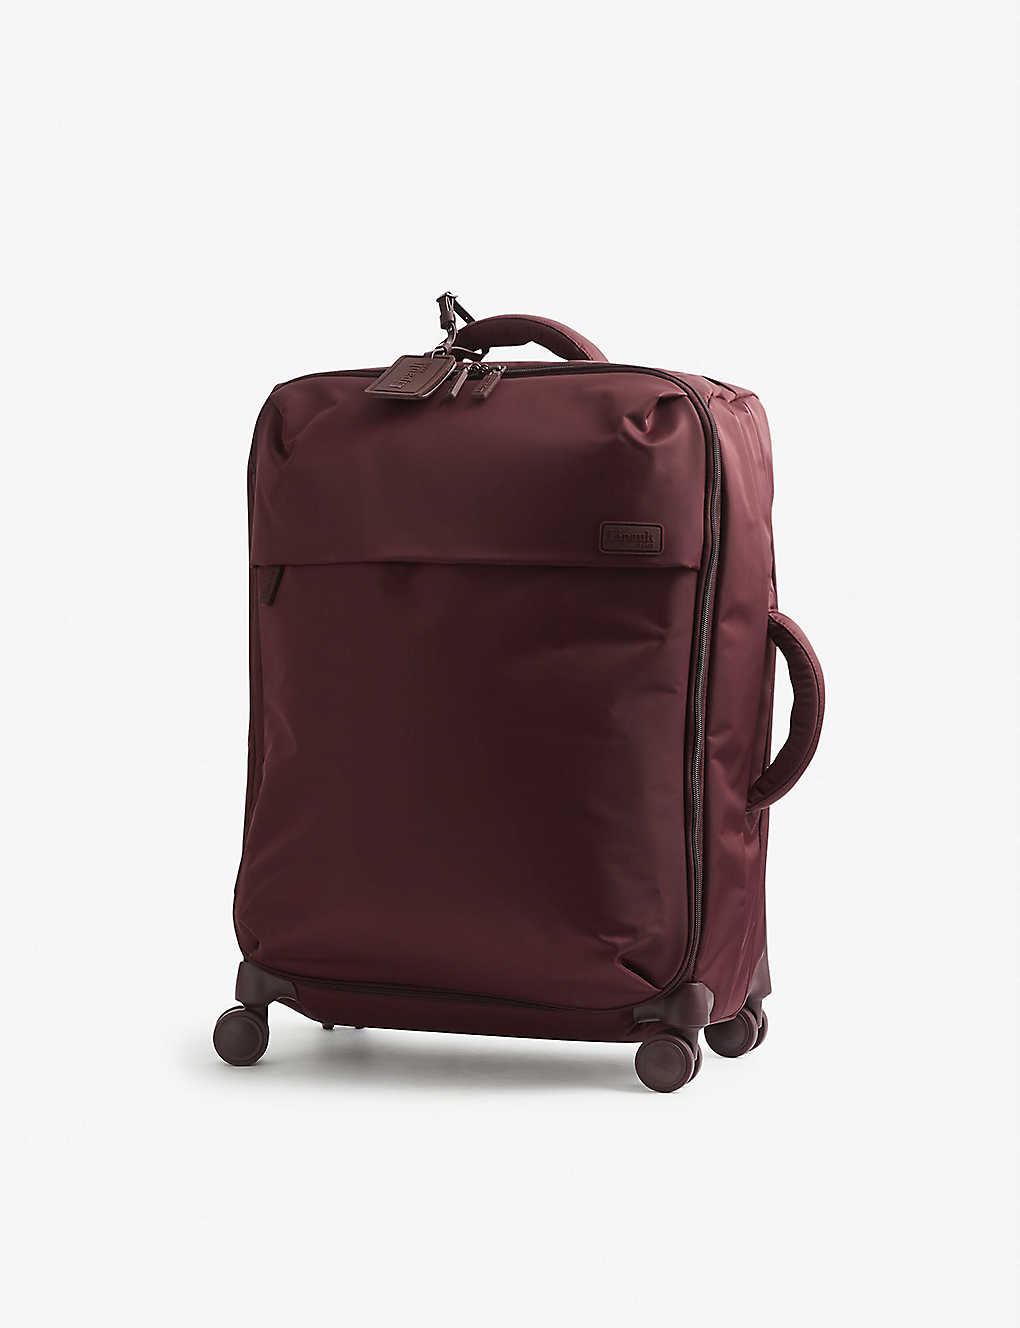 Lipault Plume Medium-trip Nylon Suitcase 63cm In Bordeaux